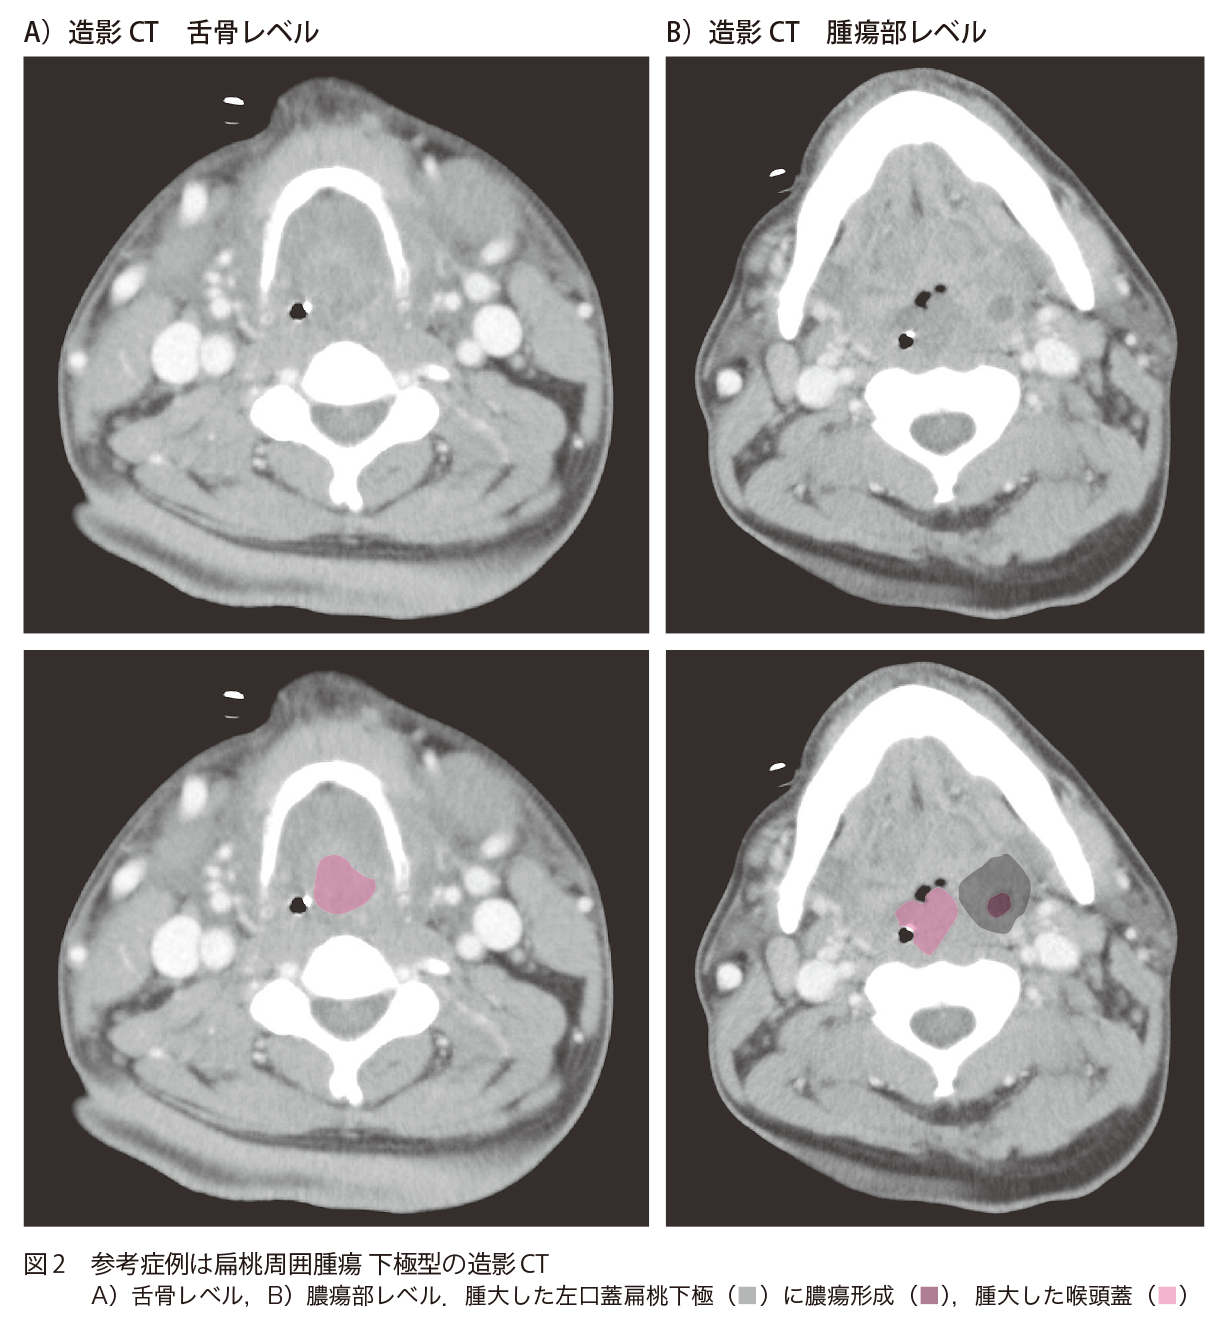 図2 参考症例は扁桃周囲腫瘍 下極型の造影CT